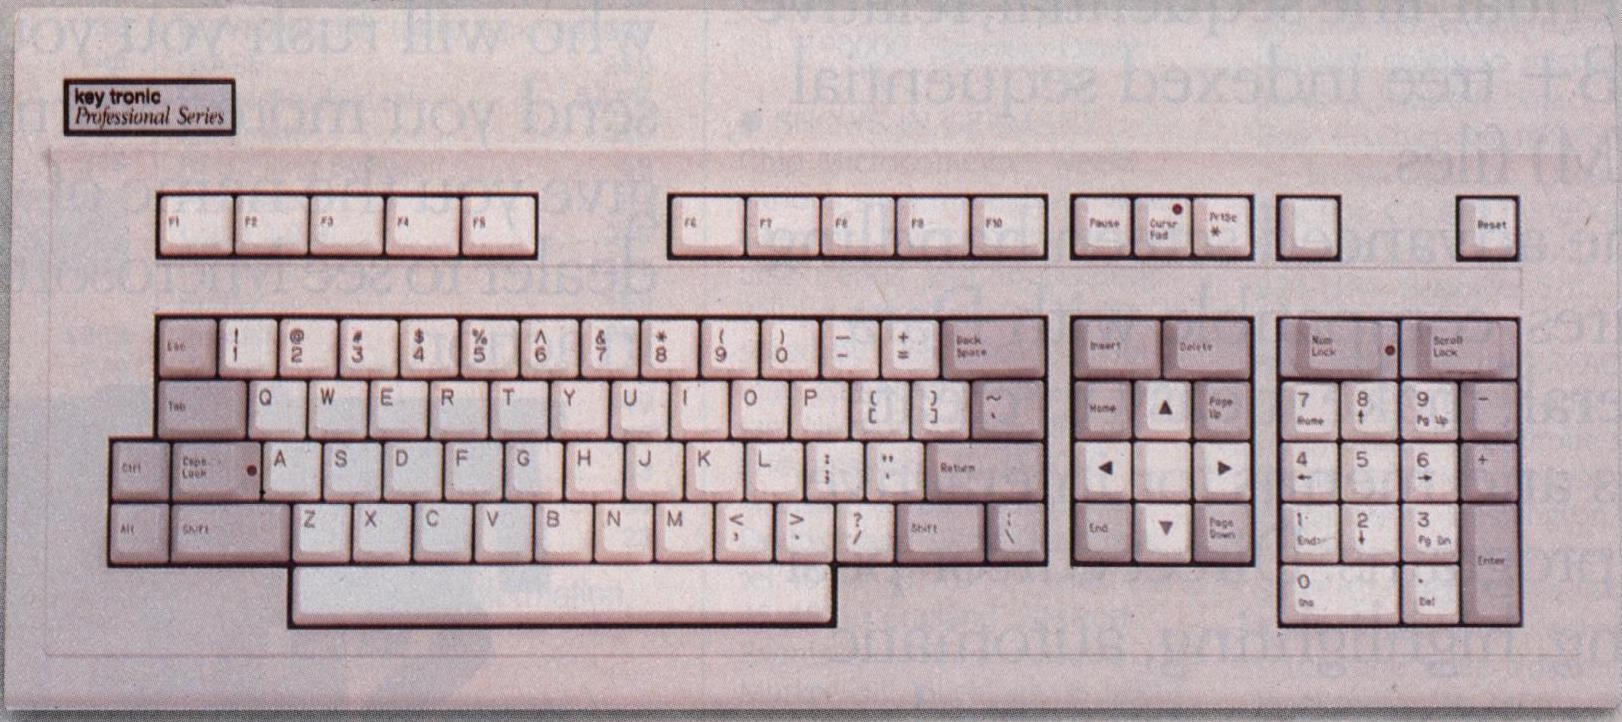 Key Tronic KB-5151. Lägg märke till de separata piltangenterna. Foto klippt från en annons från 1984.